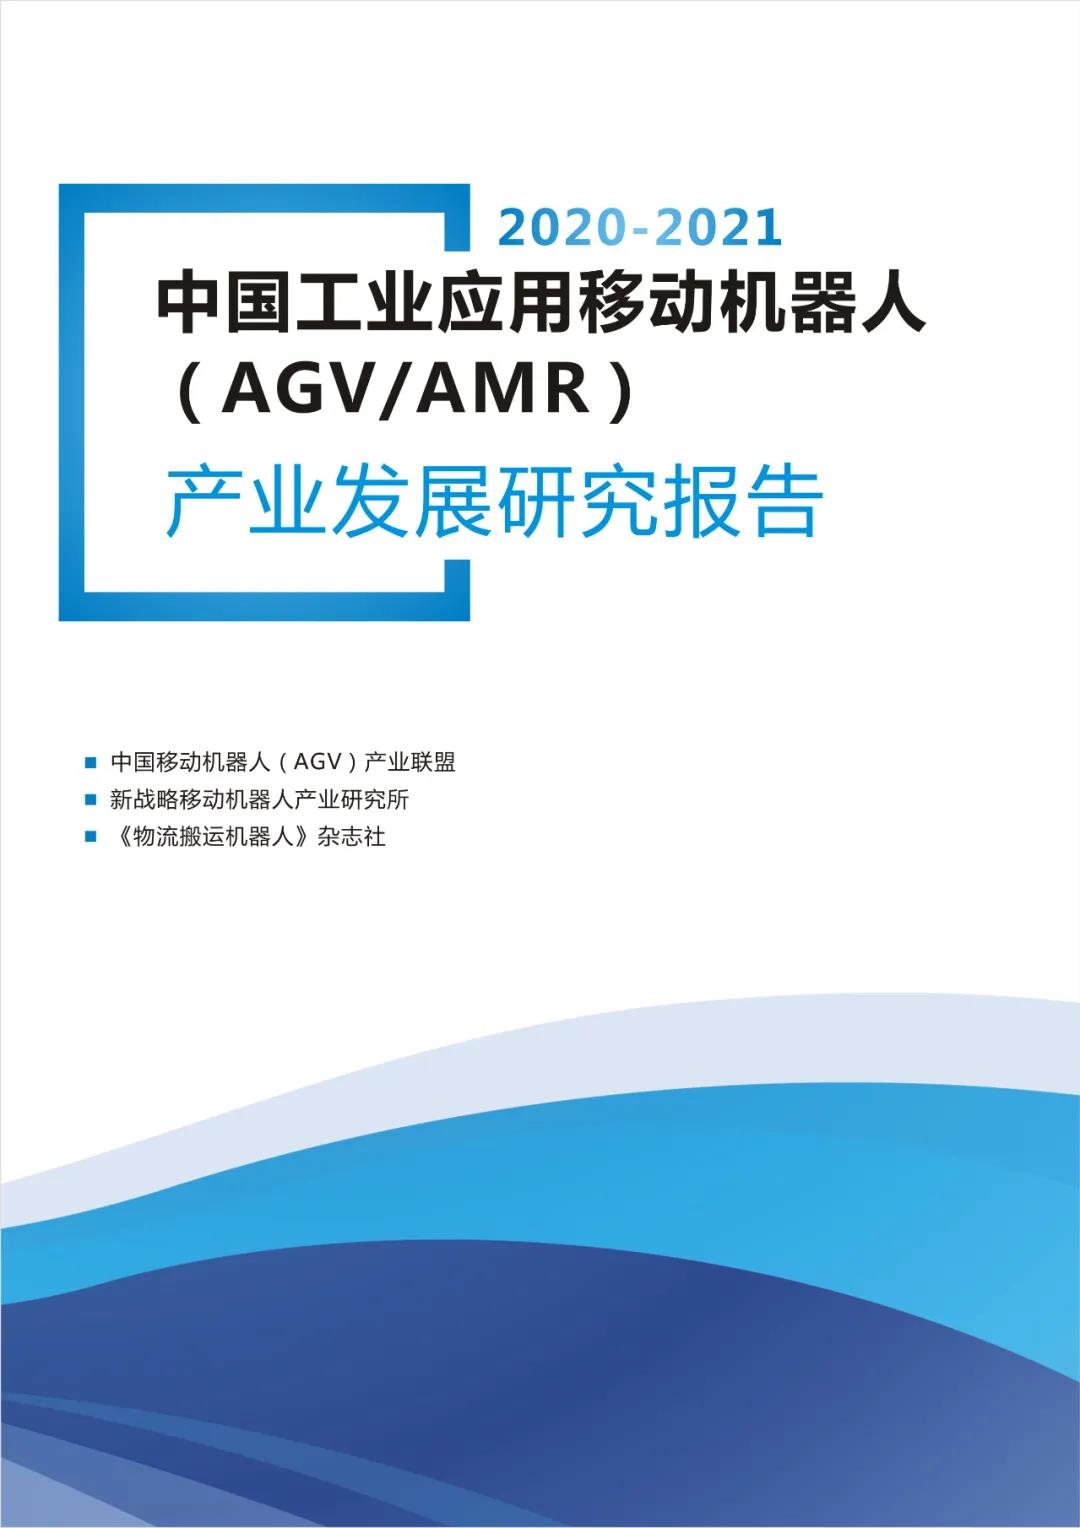 《2020-2021AGV/AMR产业发展研究报告》正式发布！